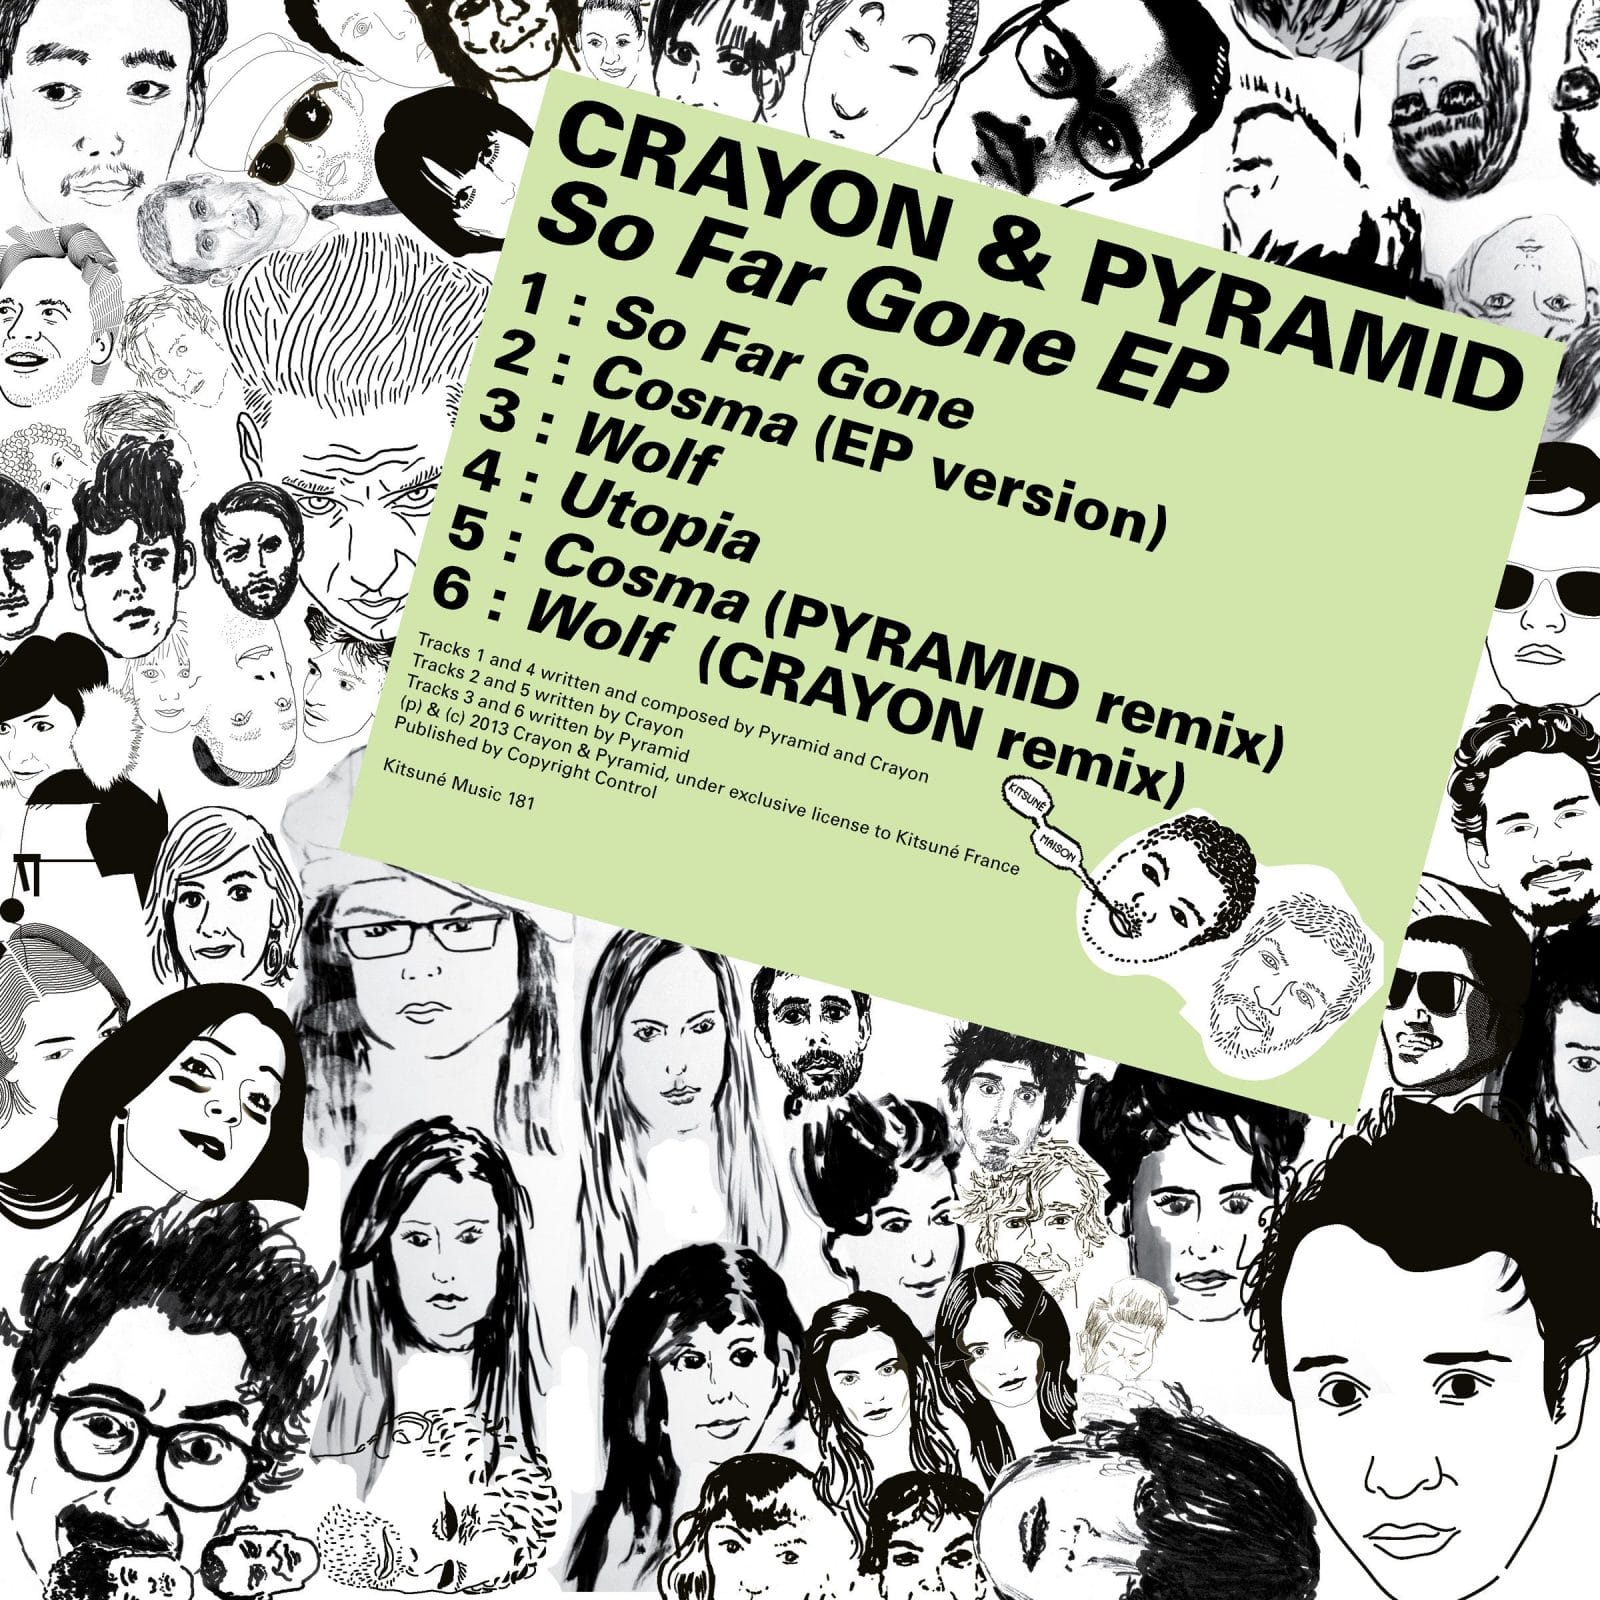 Le Crayon & Pyramid - So Far Gone EP 1